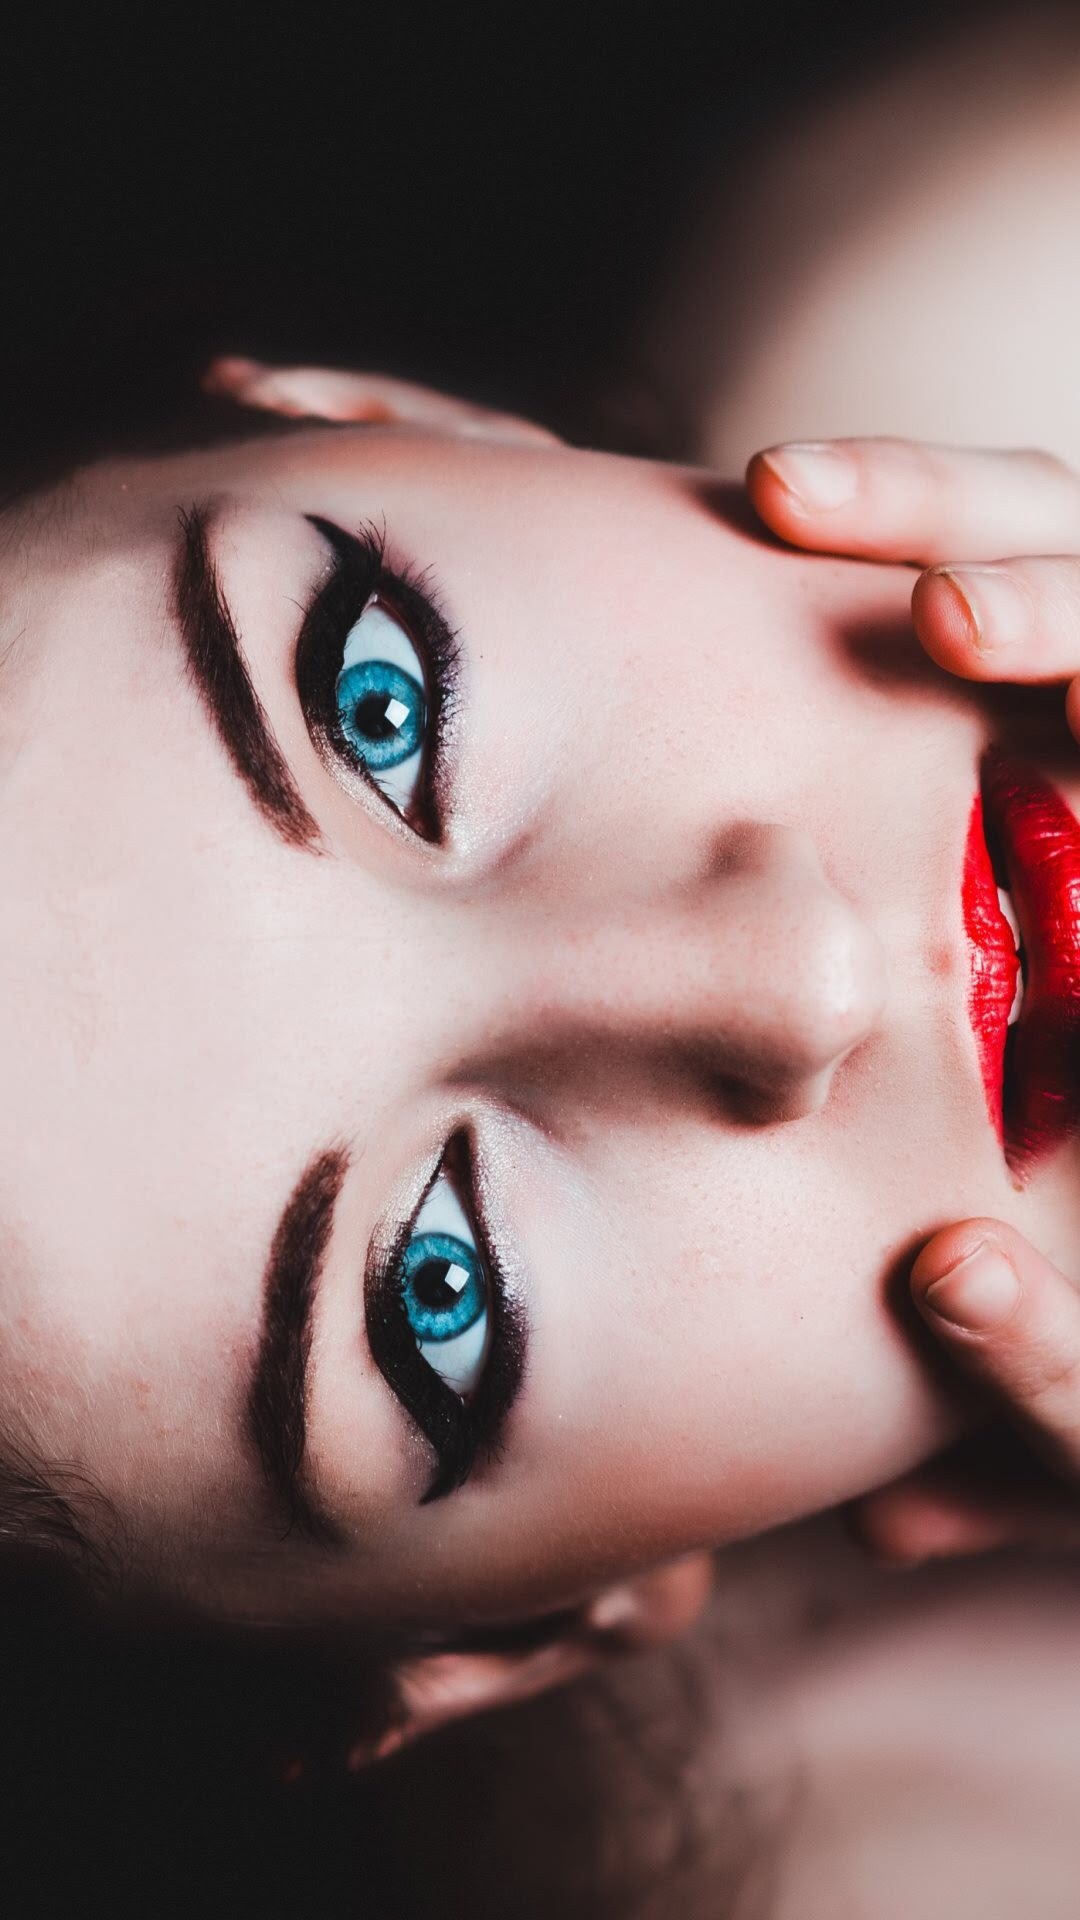 蓝色瞳孔皮肤超好的欧美模特<span style='color:red;'>人像</span>手机壁纸